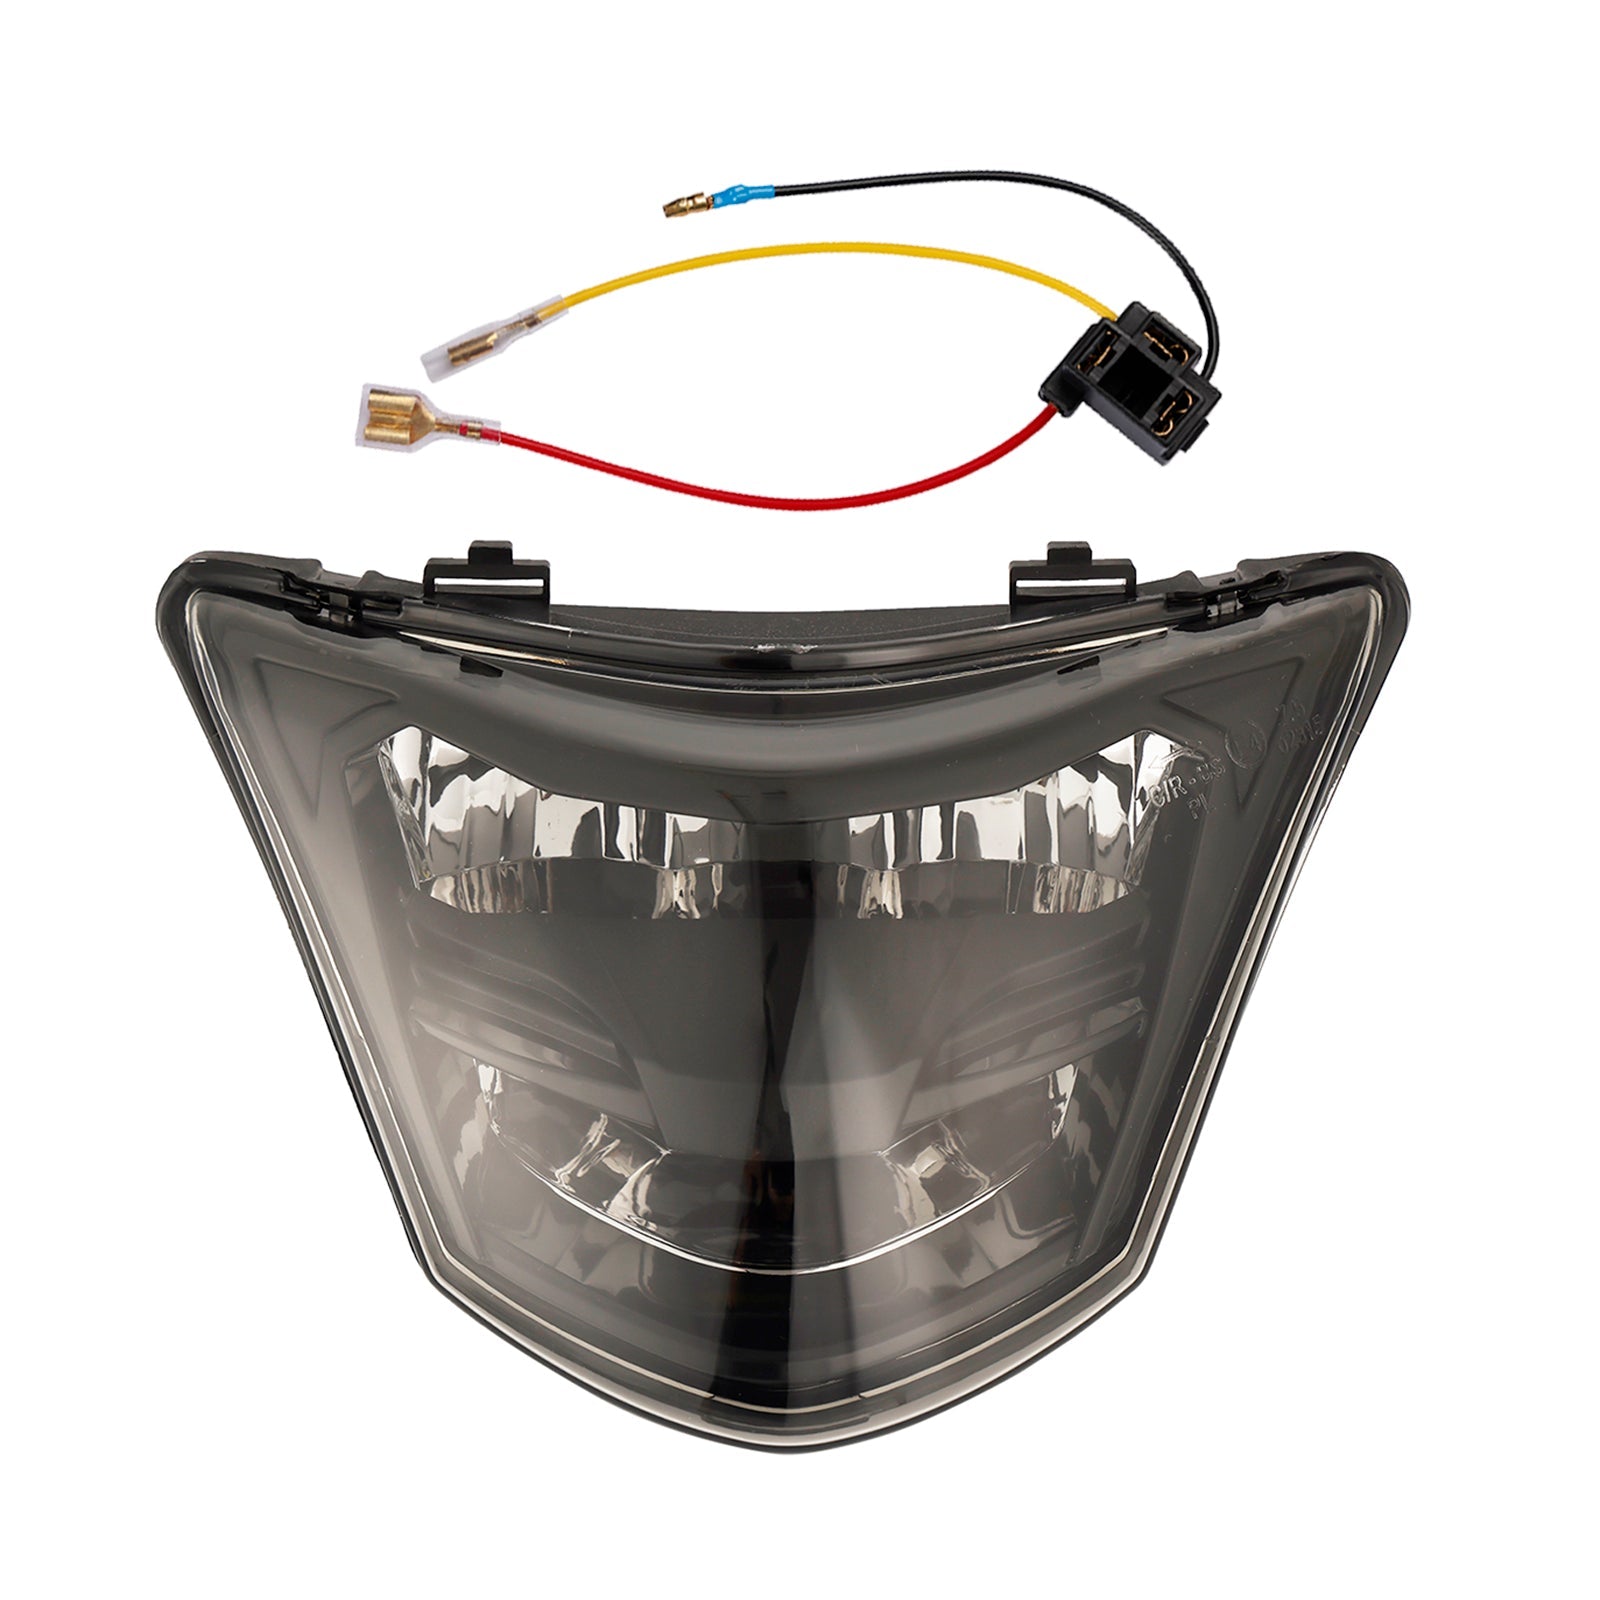 Protezione LED per griglia faro anteriore Yamaha Lc135-V1 Lc135 V1